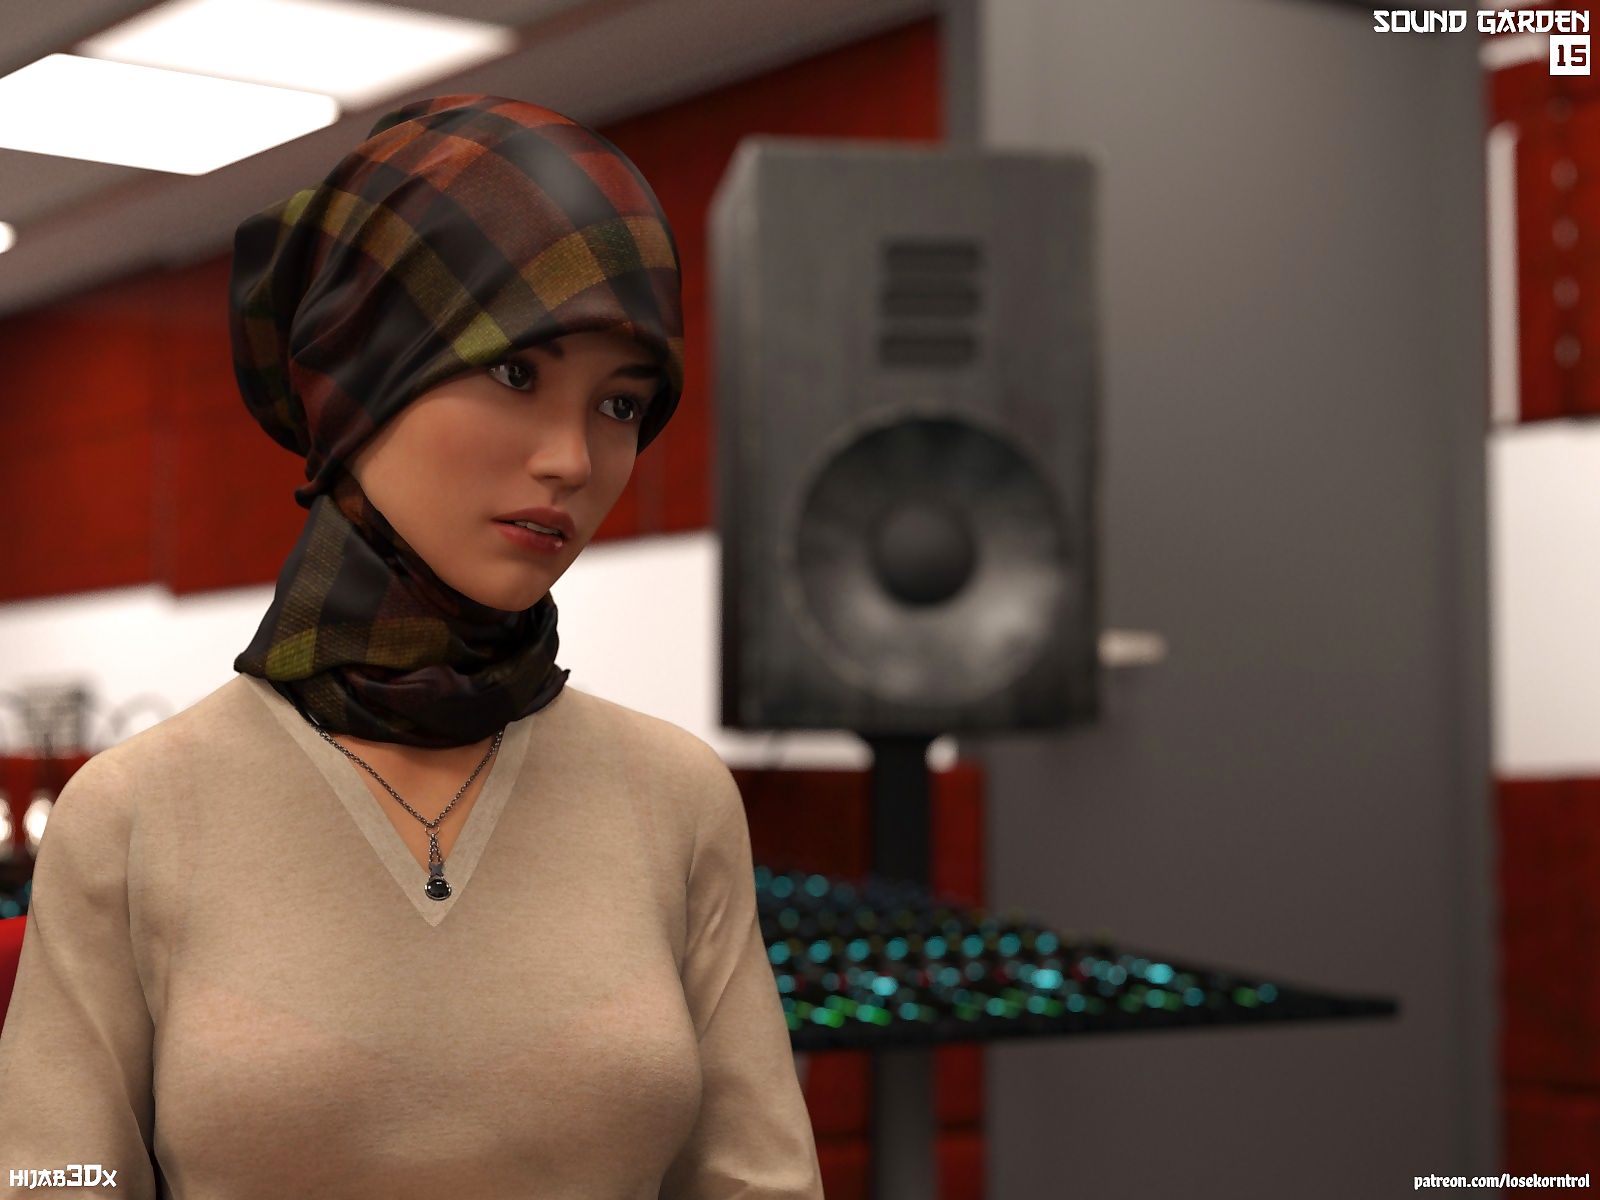 hijab 3dx losekorntrol suono Giardino